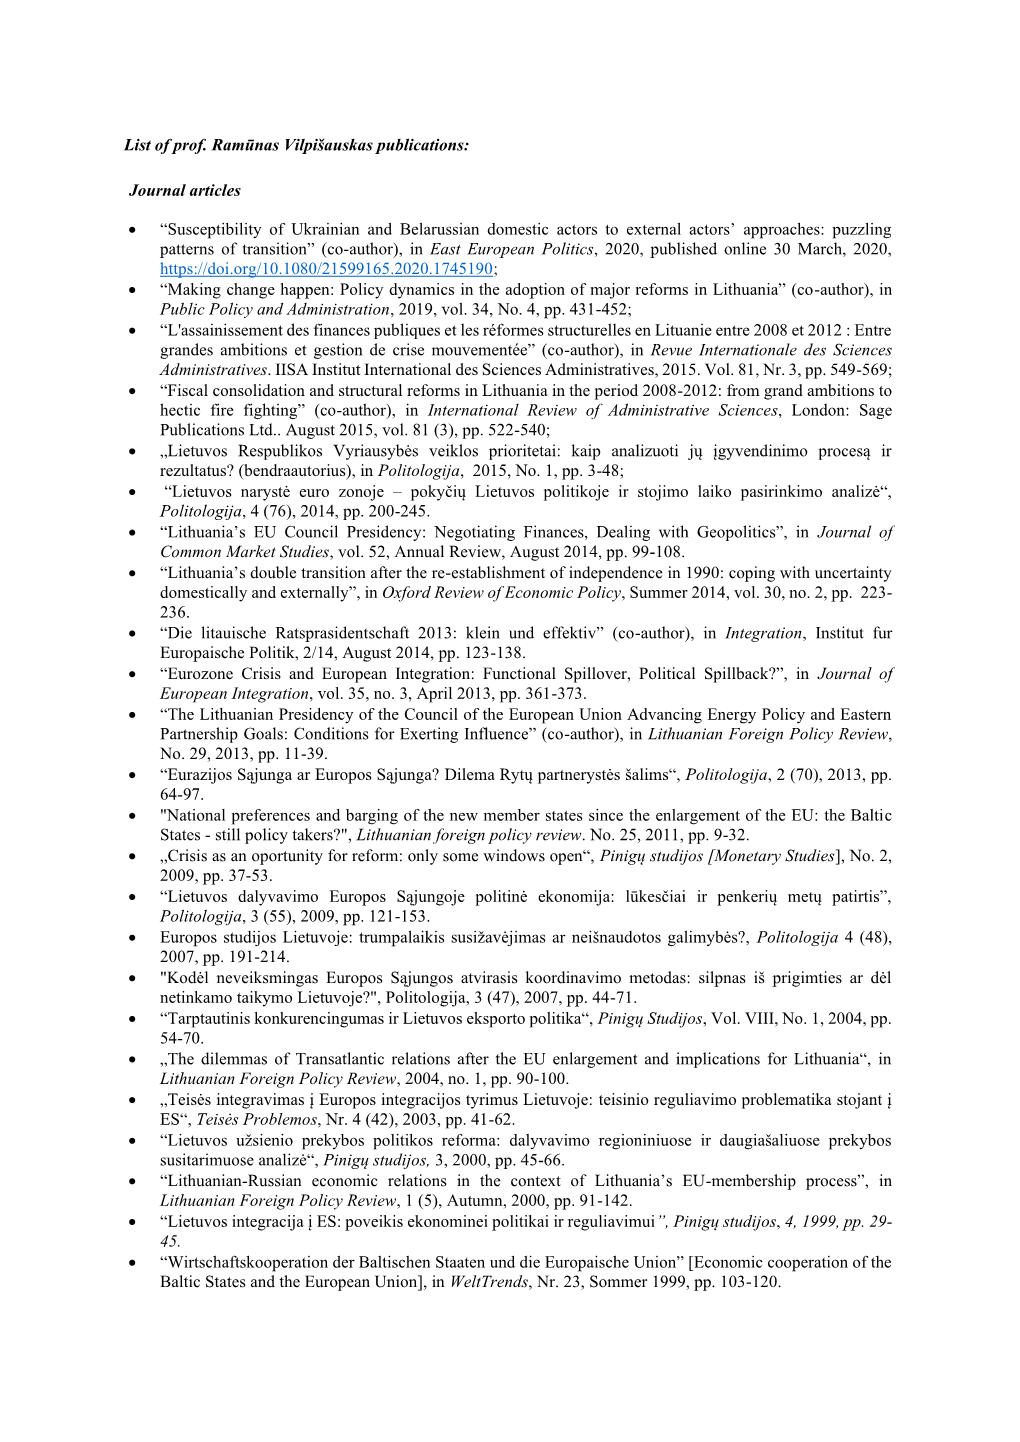 List of Prof. Ramūnas Vilpišauskas Publications: Journal Articles